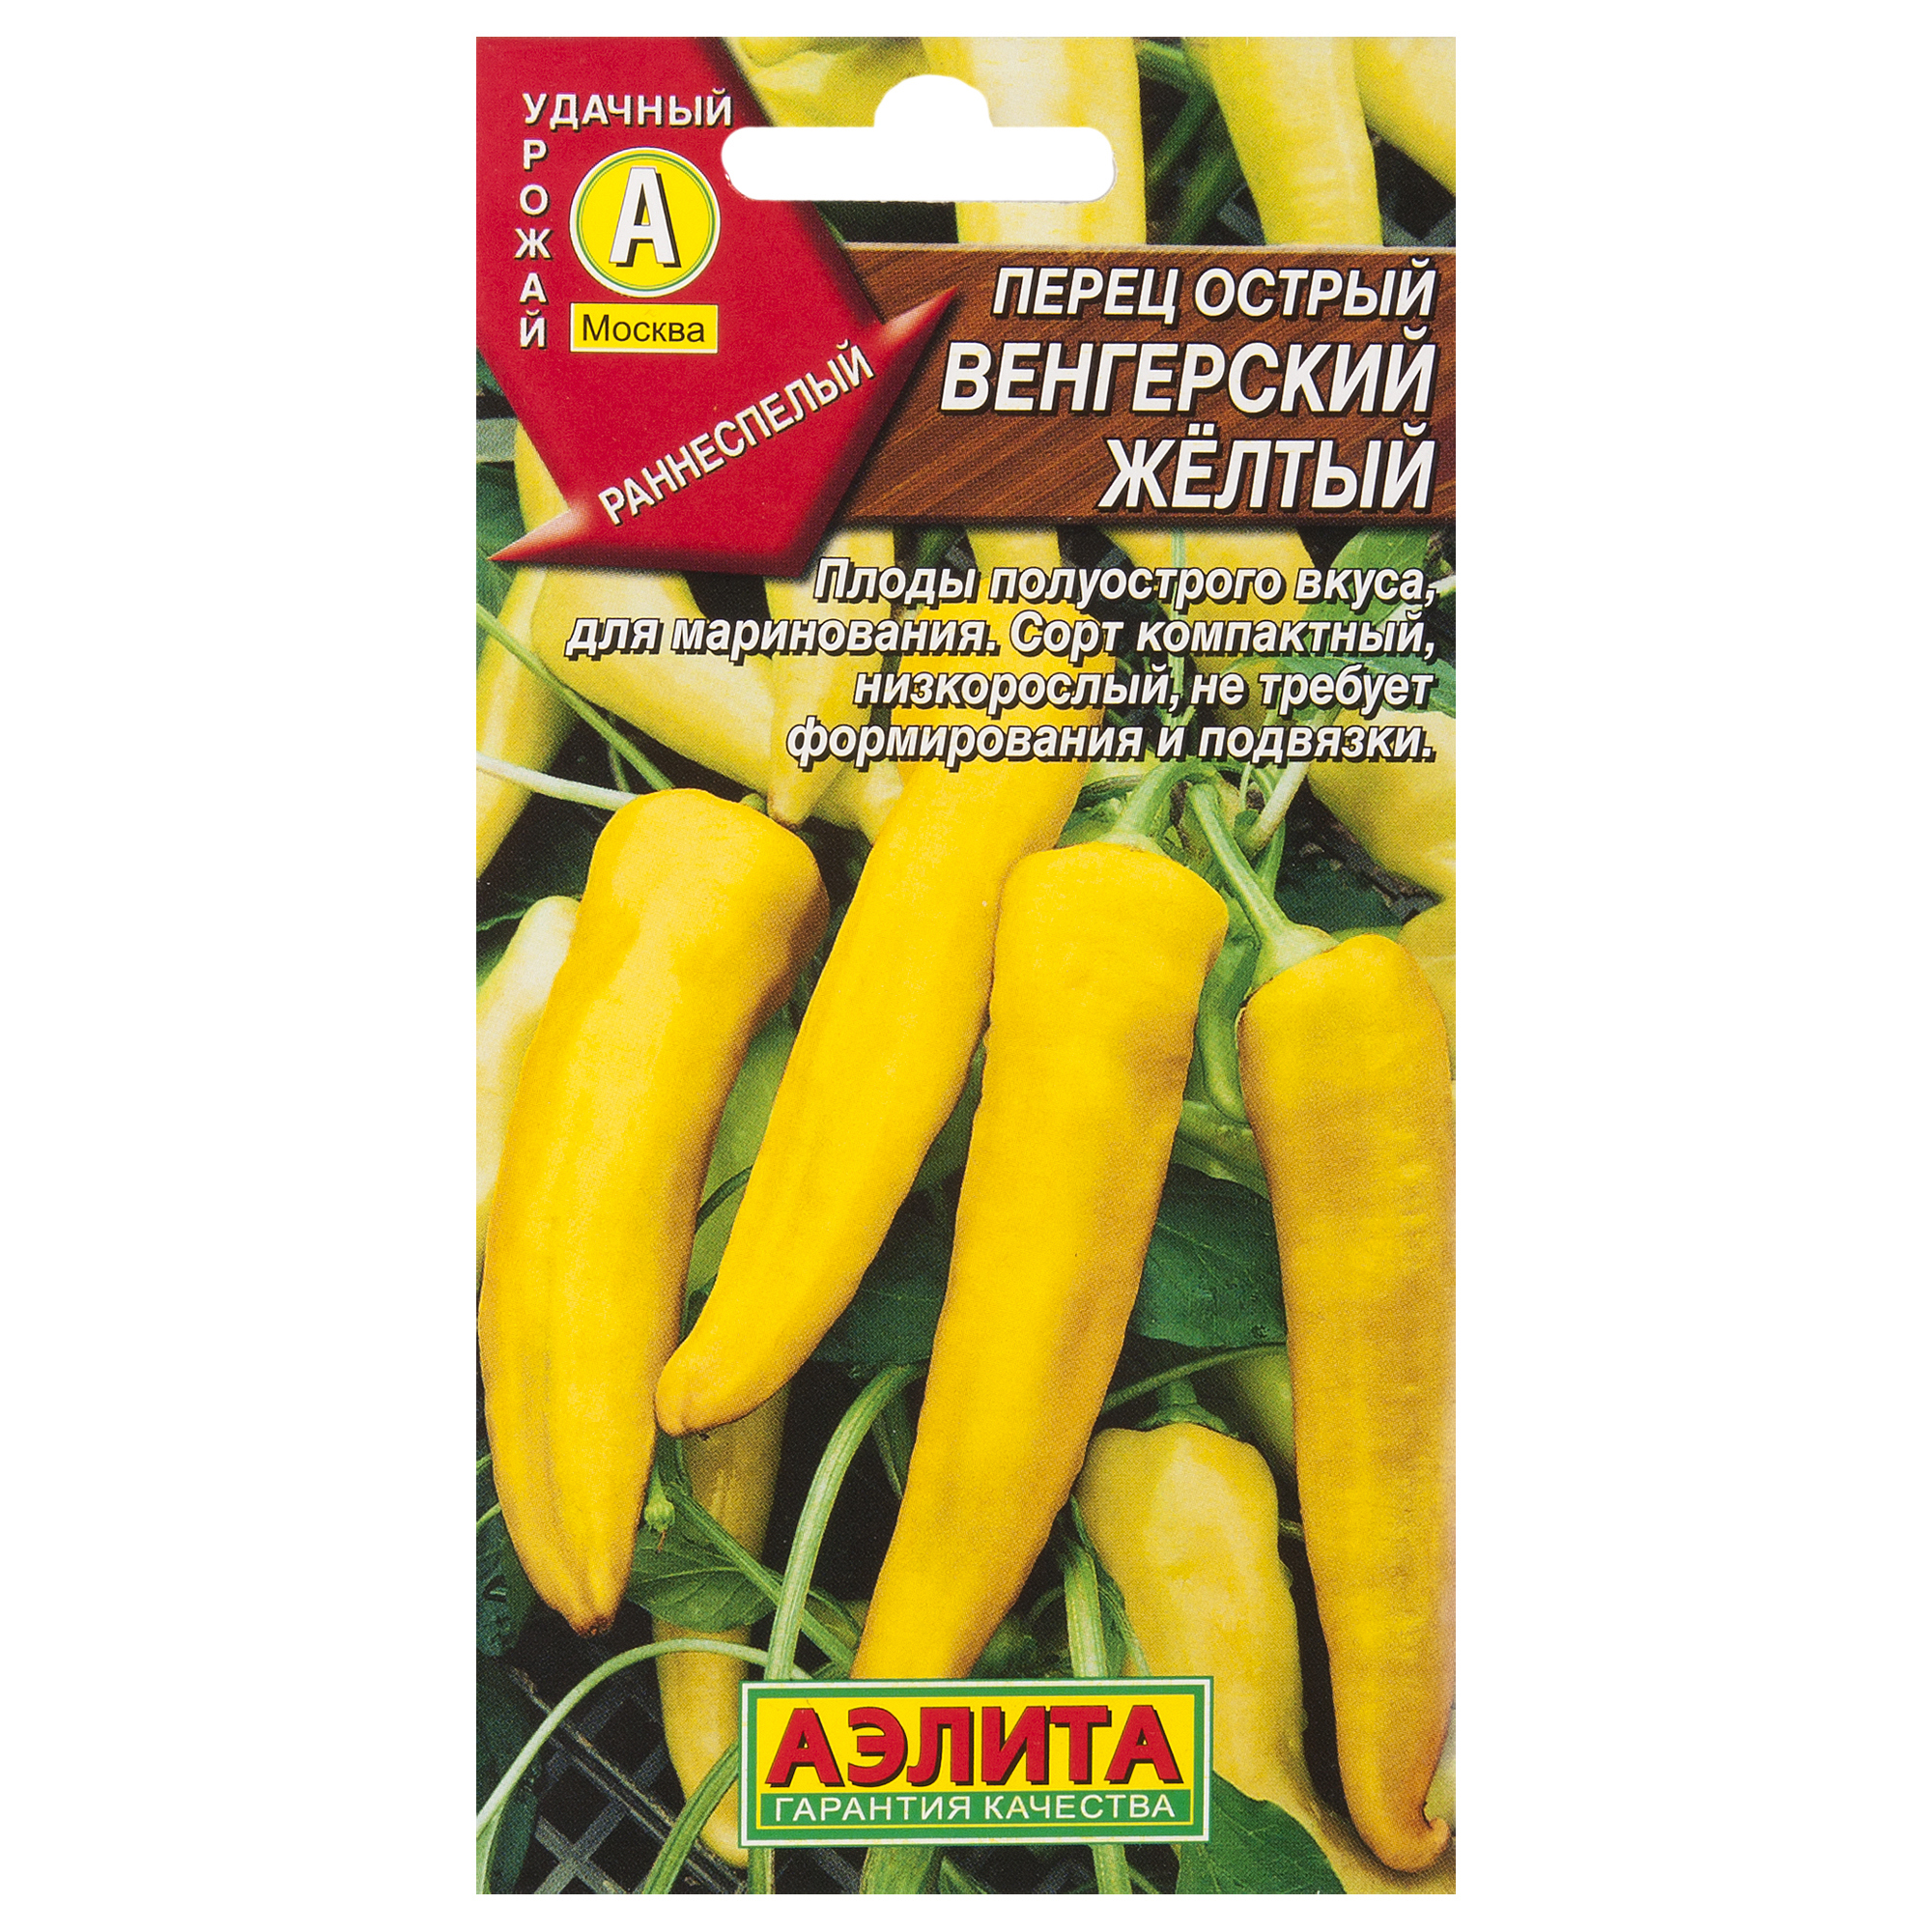 Семена Перец острый «Венгерский жёлтый» в Архангельске – купить по низкойцене в интернет-магазине Леруа Мерлен